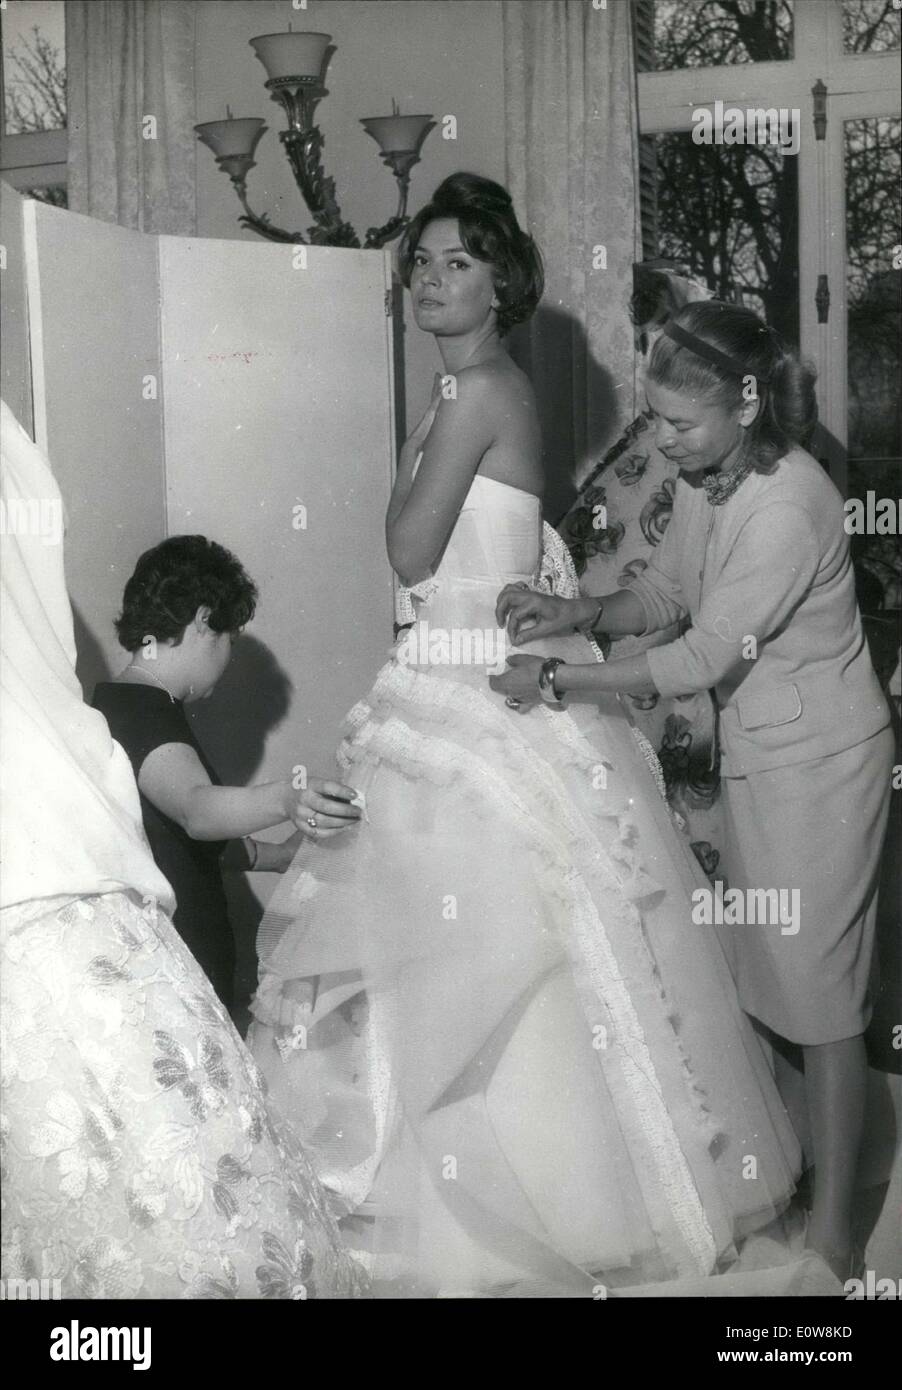 El 17 de enero, 1962 - Carven & Assistant Alter Colección Primavera vestido de novia Foto de stock